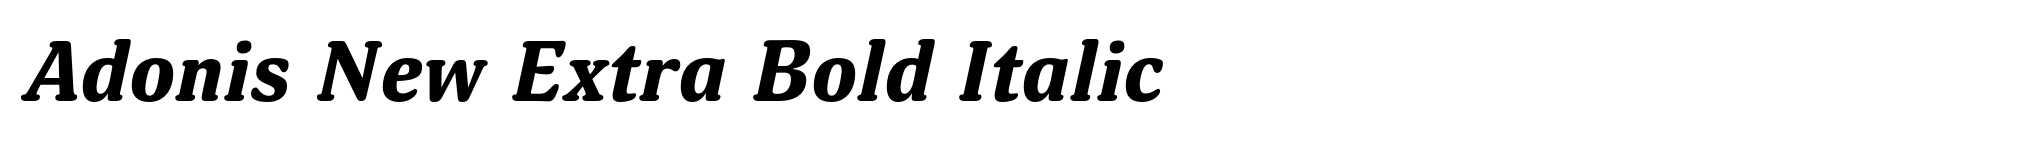 Adonis New Extra Bold Italic image